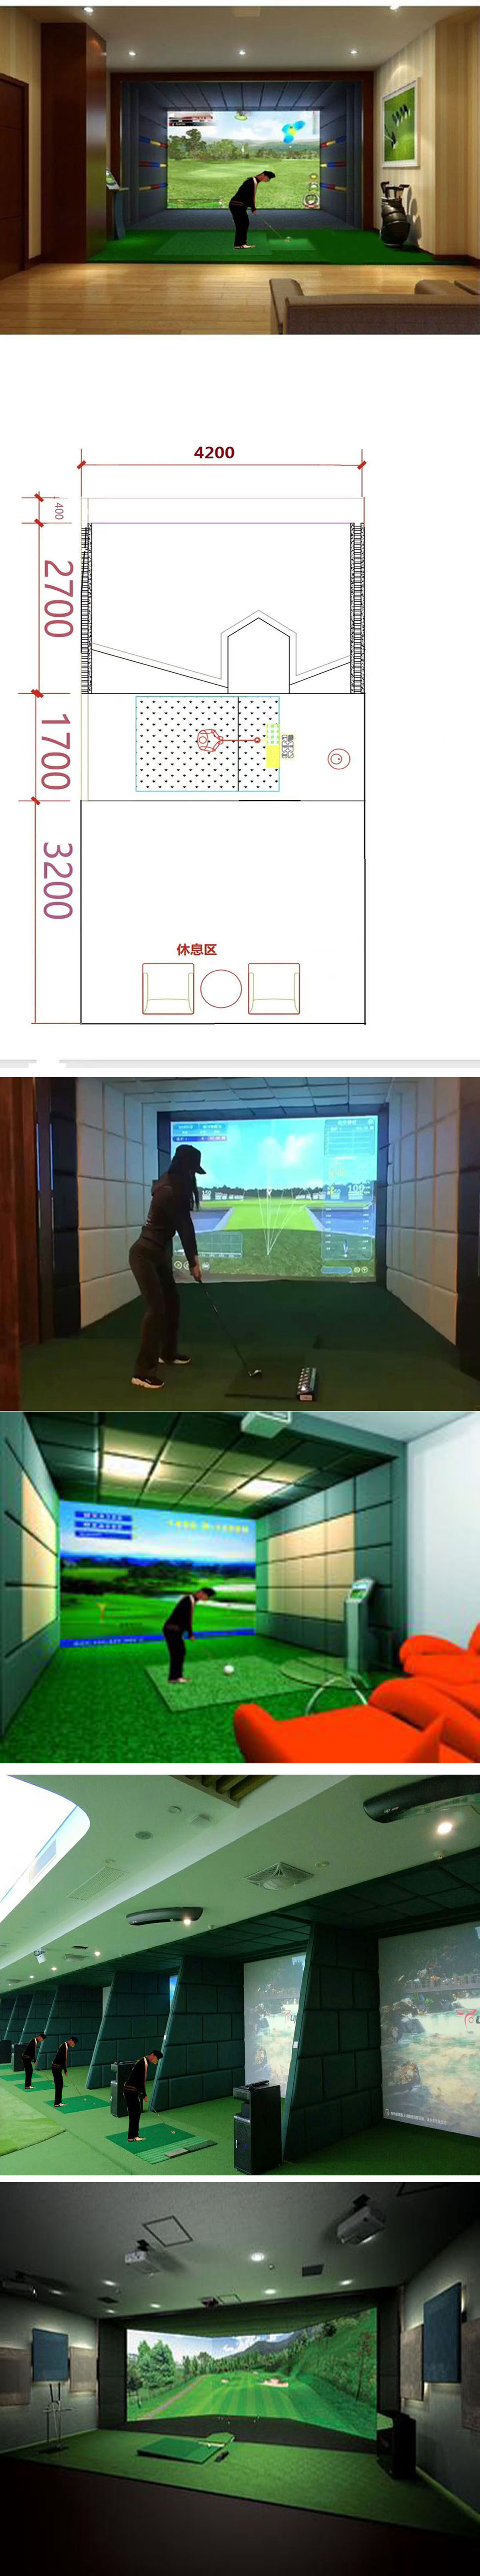 室内高尔夫模拟设备 004.jpg